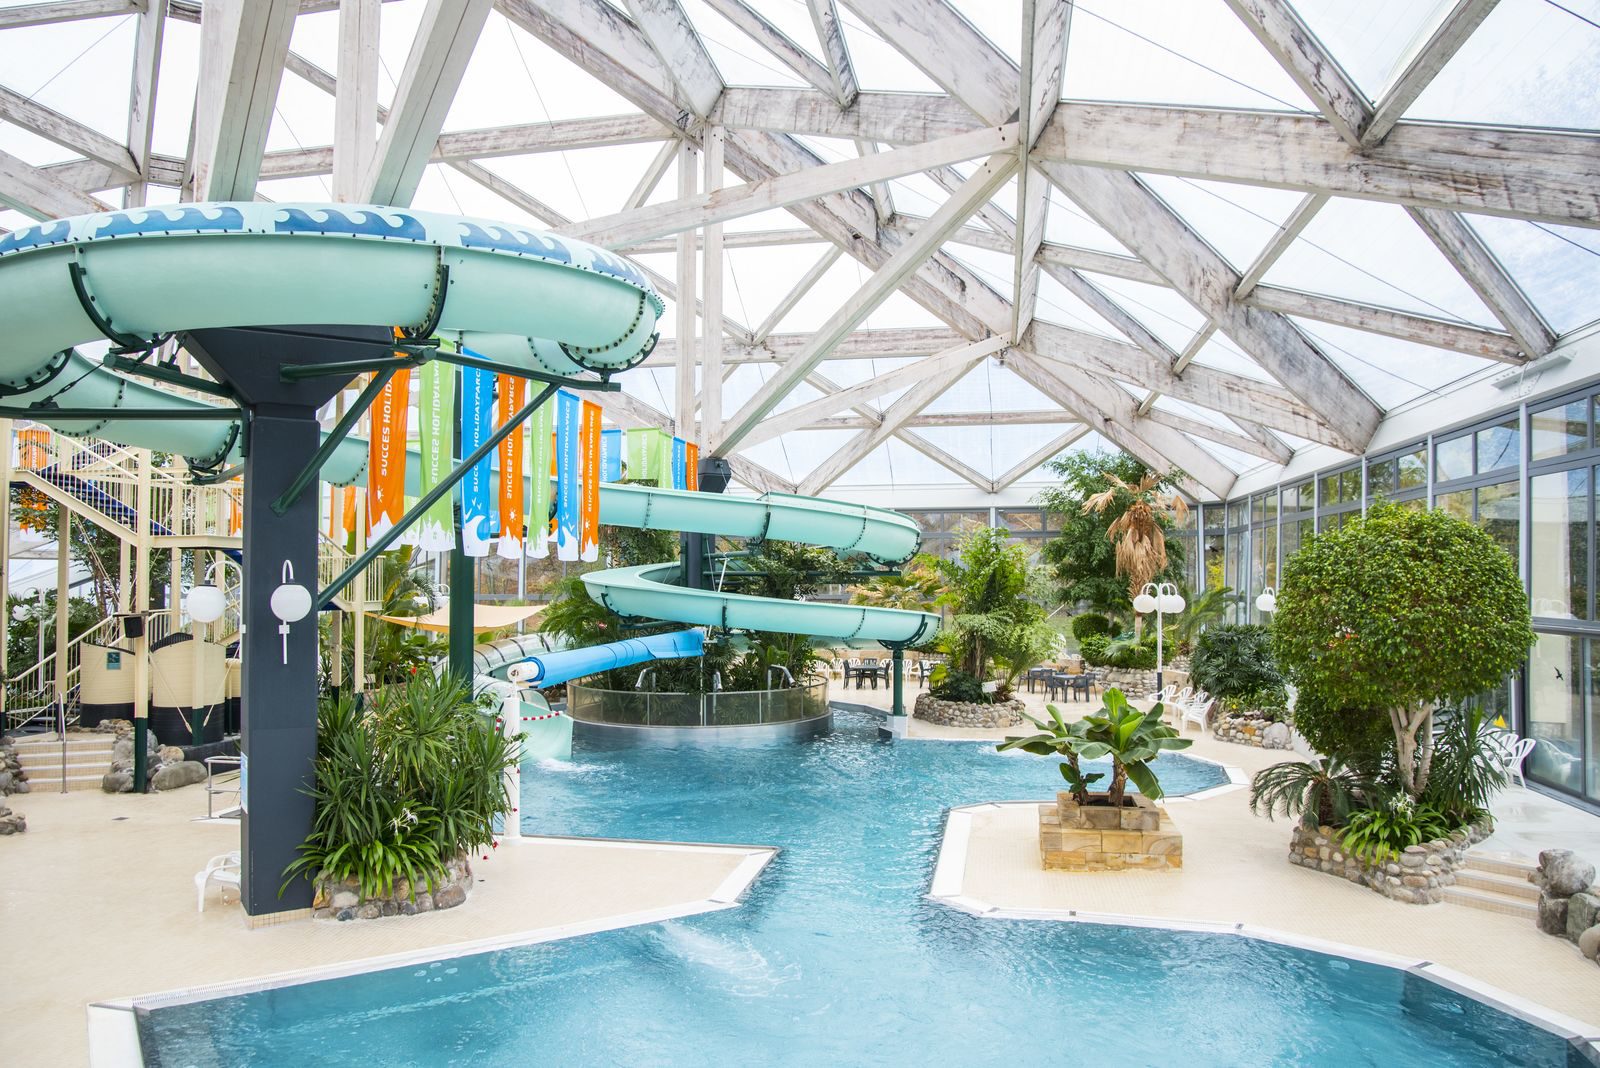 Ferienpark mit subtropischem Hallenbad